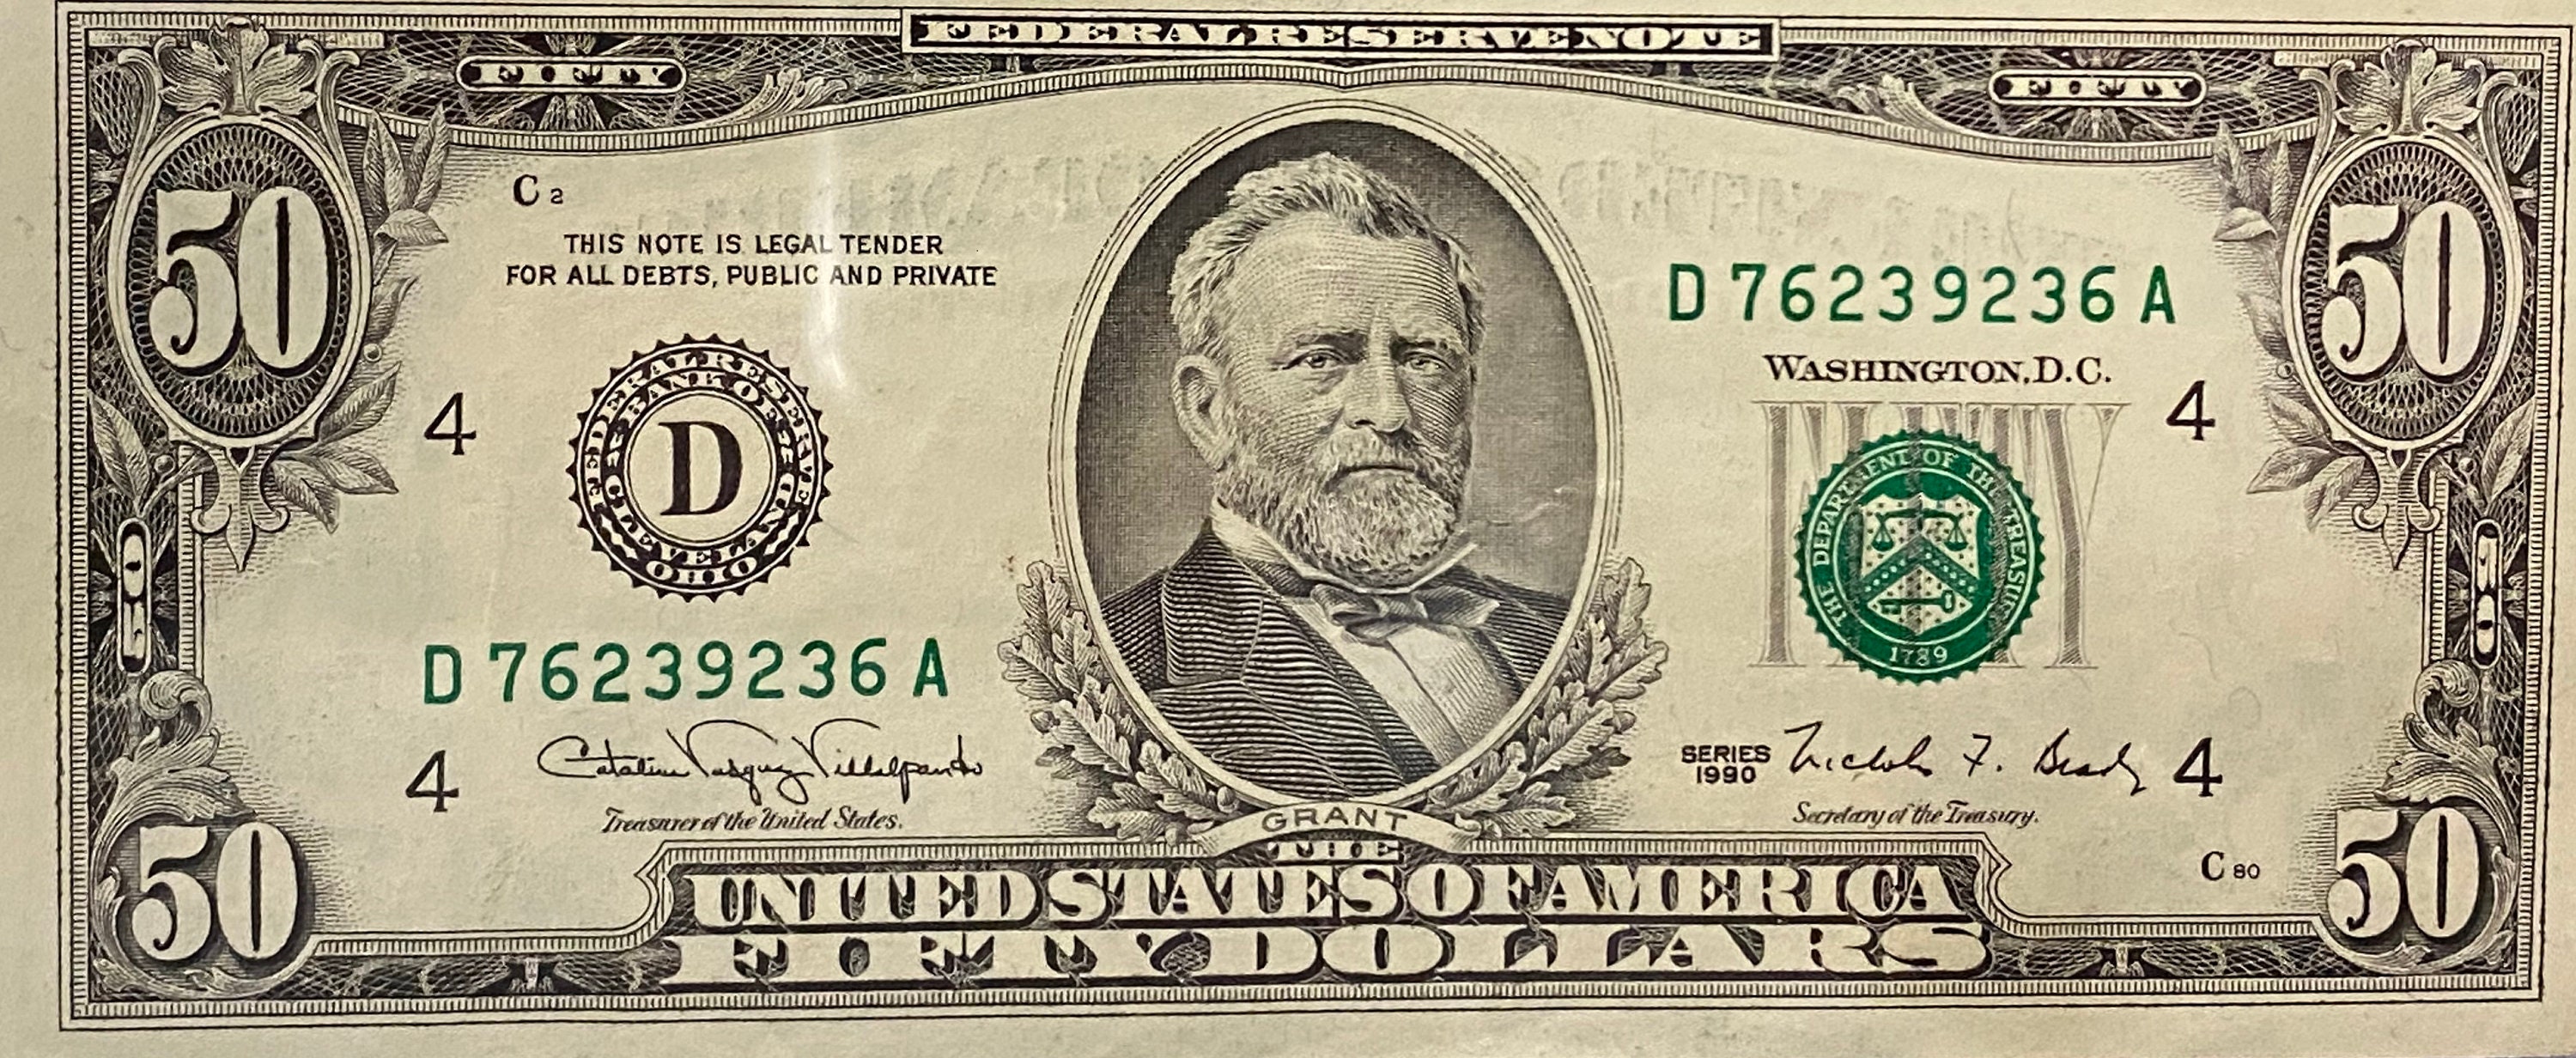 1990 Vintage 50 Dollar Bill